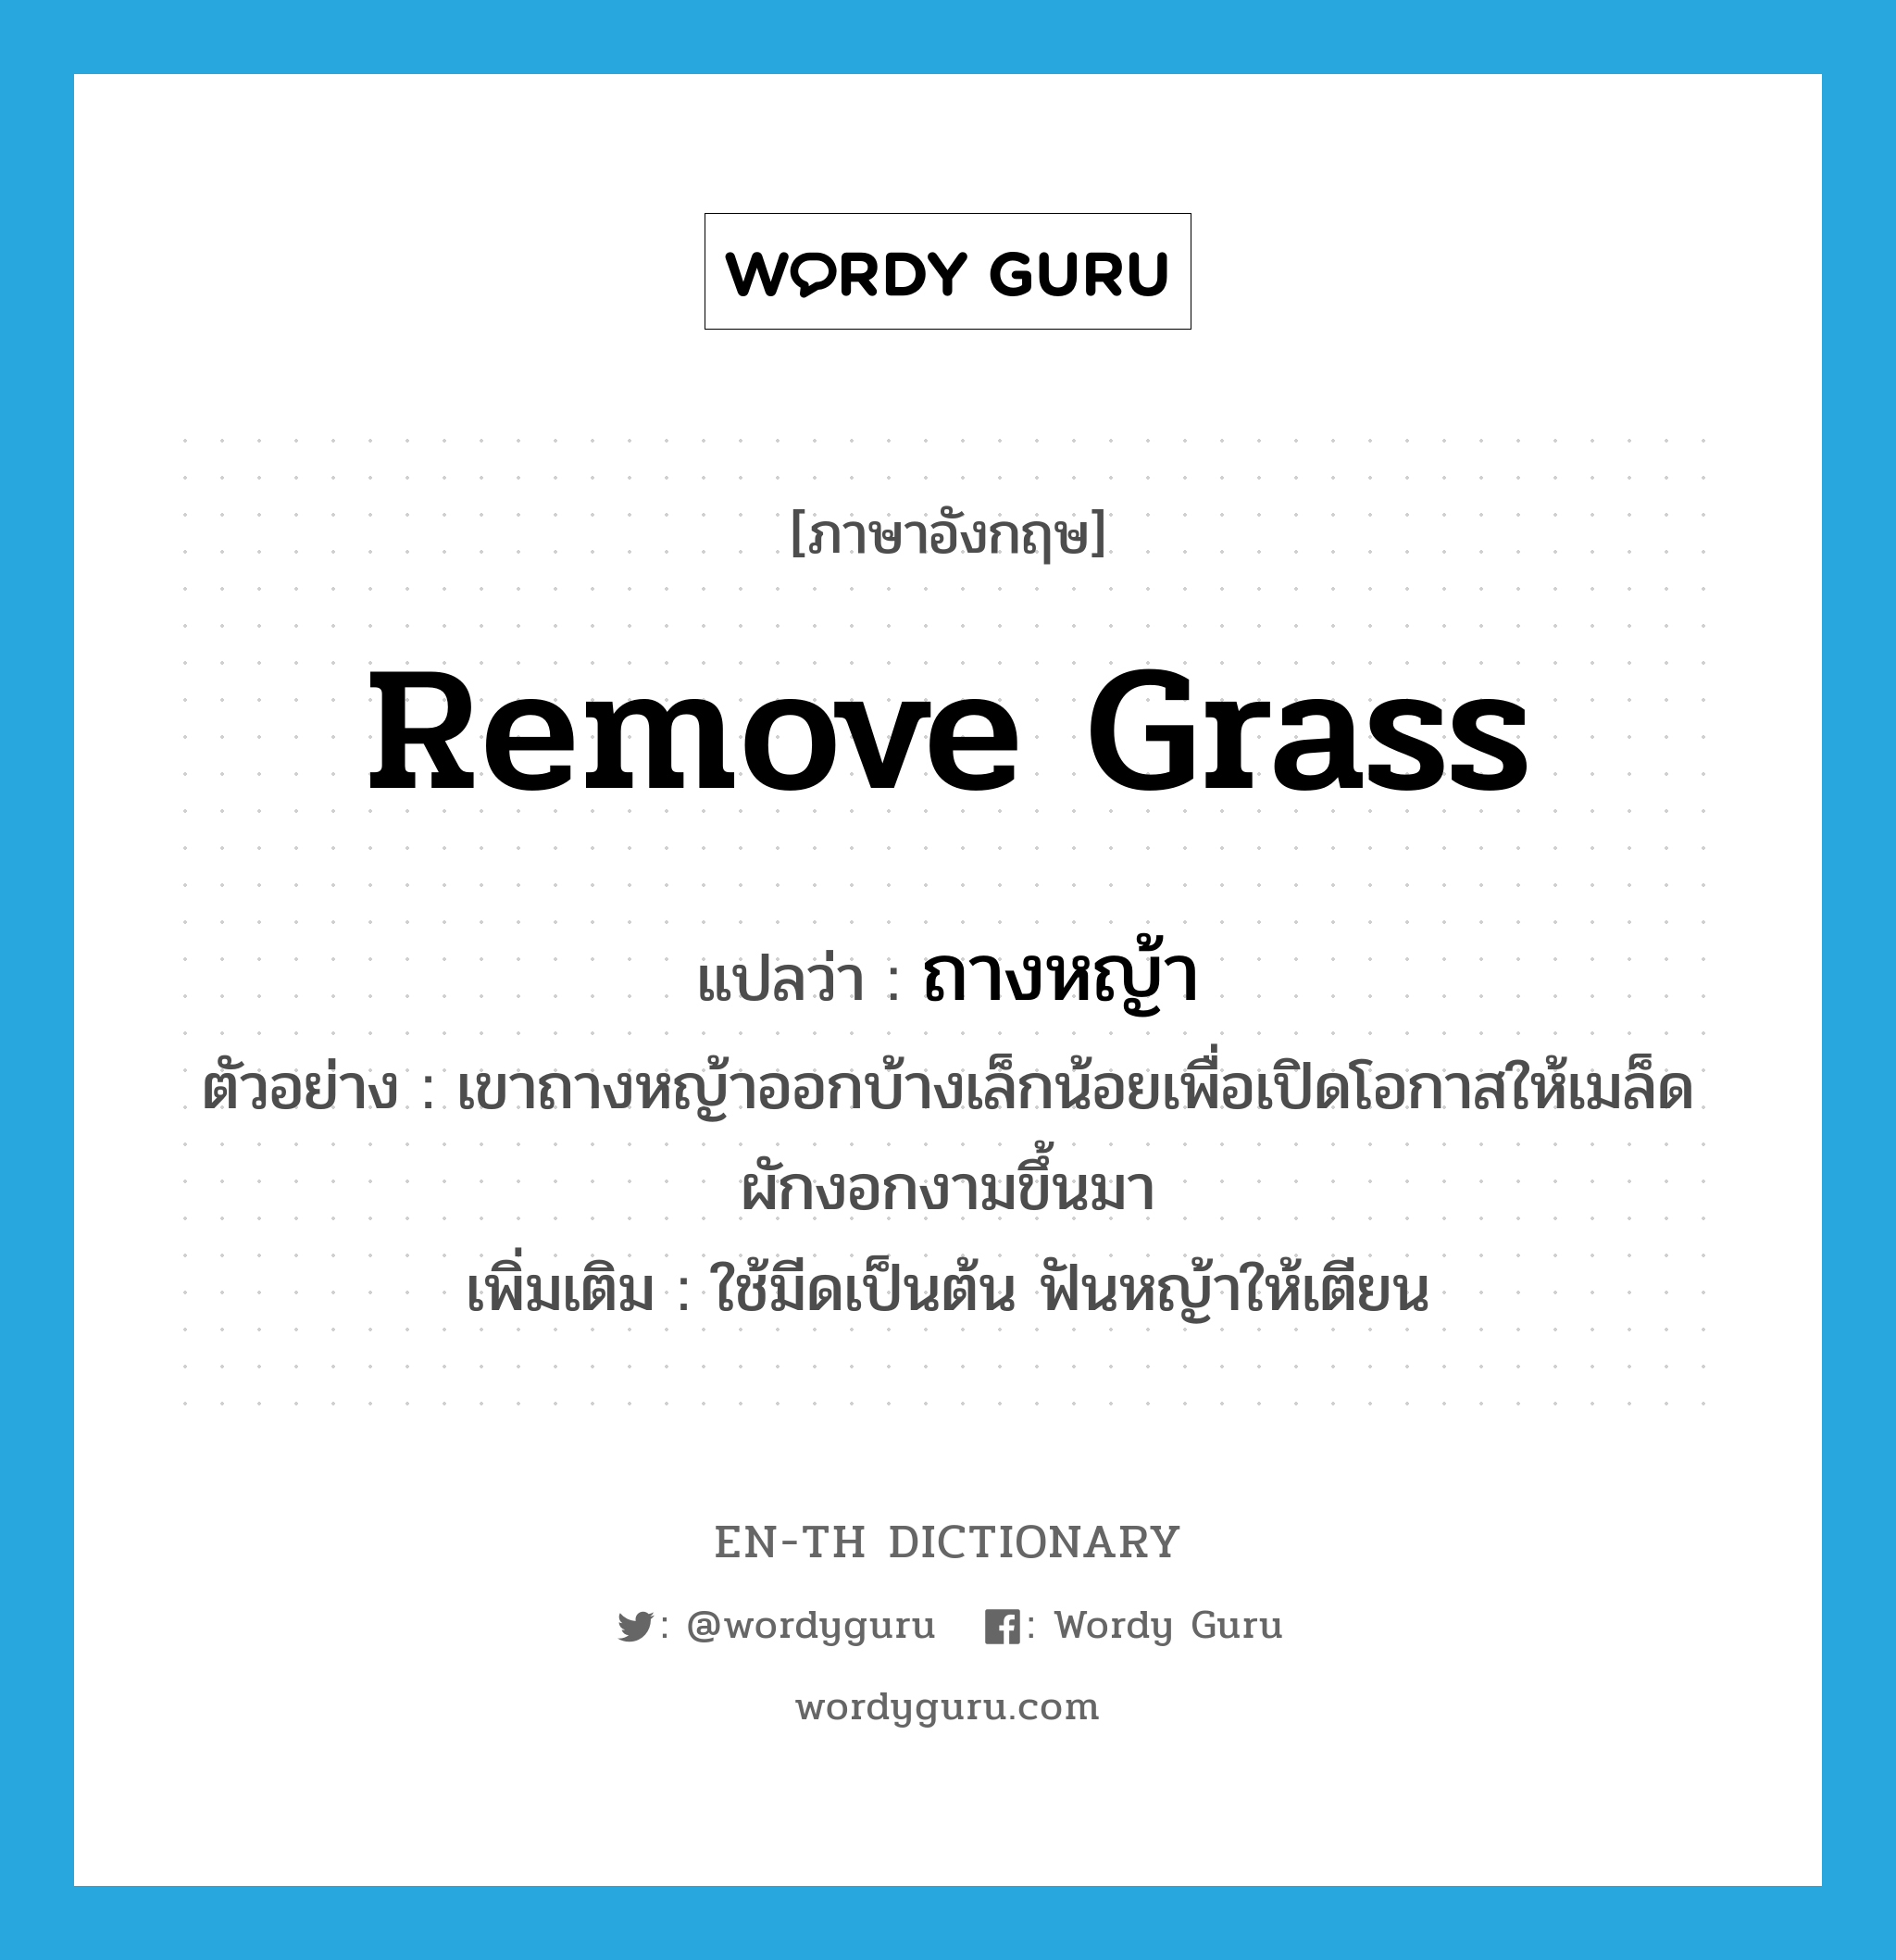 remove grass แปลว่า?, คำศัพท์ภาษาอังกฤษ remove grass แปลว่า ถางหญ้า ประเภท V ตัวอย่าง เขาถางหญ้าออกบ้างเล็กน้อยเพื่อเปิดโอกาสให้เมล็ดผักงอกงามขึ้นมา เพิ่มเติม ใช้มีดเป็นต้น ฟันหญ้าให้เตียน หมวด V